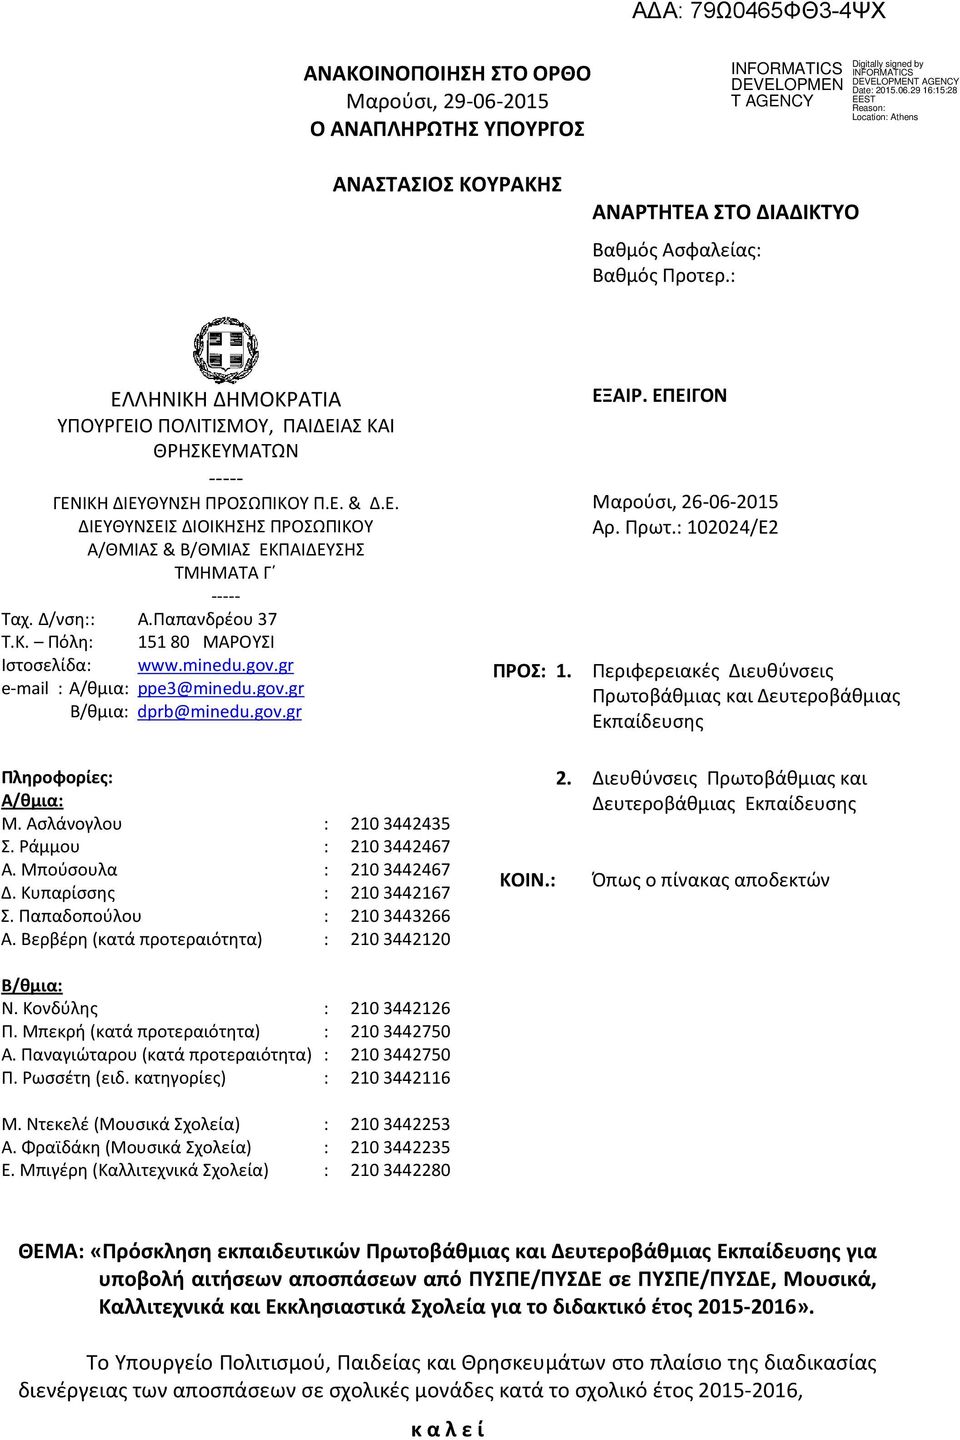 Δ/νση Α.Παπανδρέου 37 Τ.Κ. Πόλη 151 80 ΜΑΡΟΥΣΙ Ιστοσελίδα www.minedu.gov.gr e-mail A/θμια ppe3@minedu.gov.gr B/θμια dprb@minedu.gov.gr ΠΡΟΣ 1. ΕΞΑΙΡ. ΕΠΕΙΓΟΝ Μαρούσι, 26-06-2015 Αρ. Πρωτ.